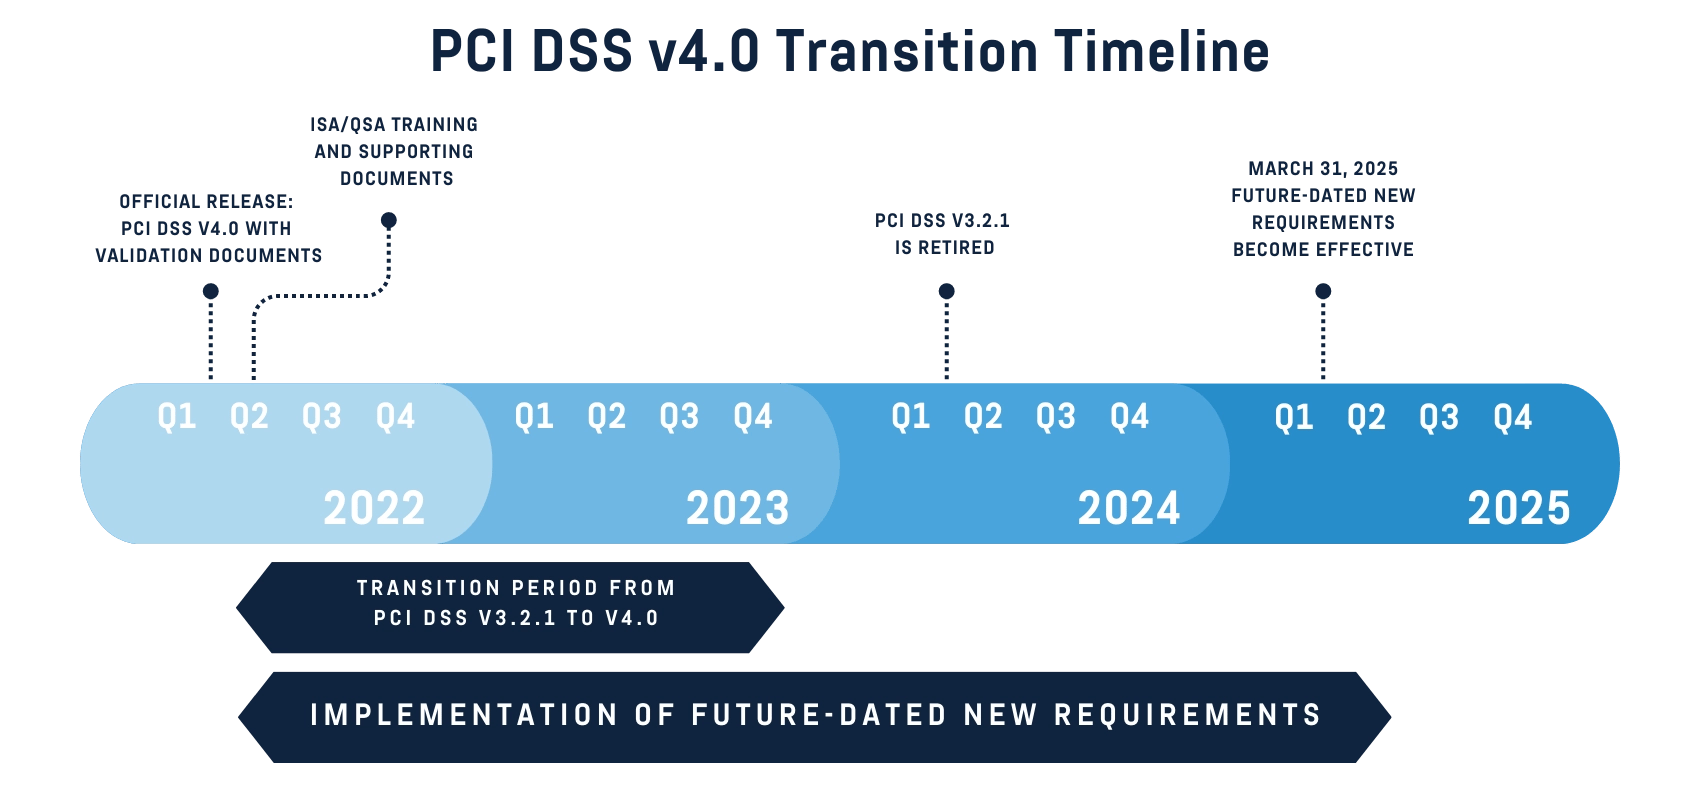 PCI DSS Transition Timeline